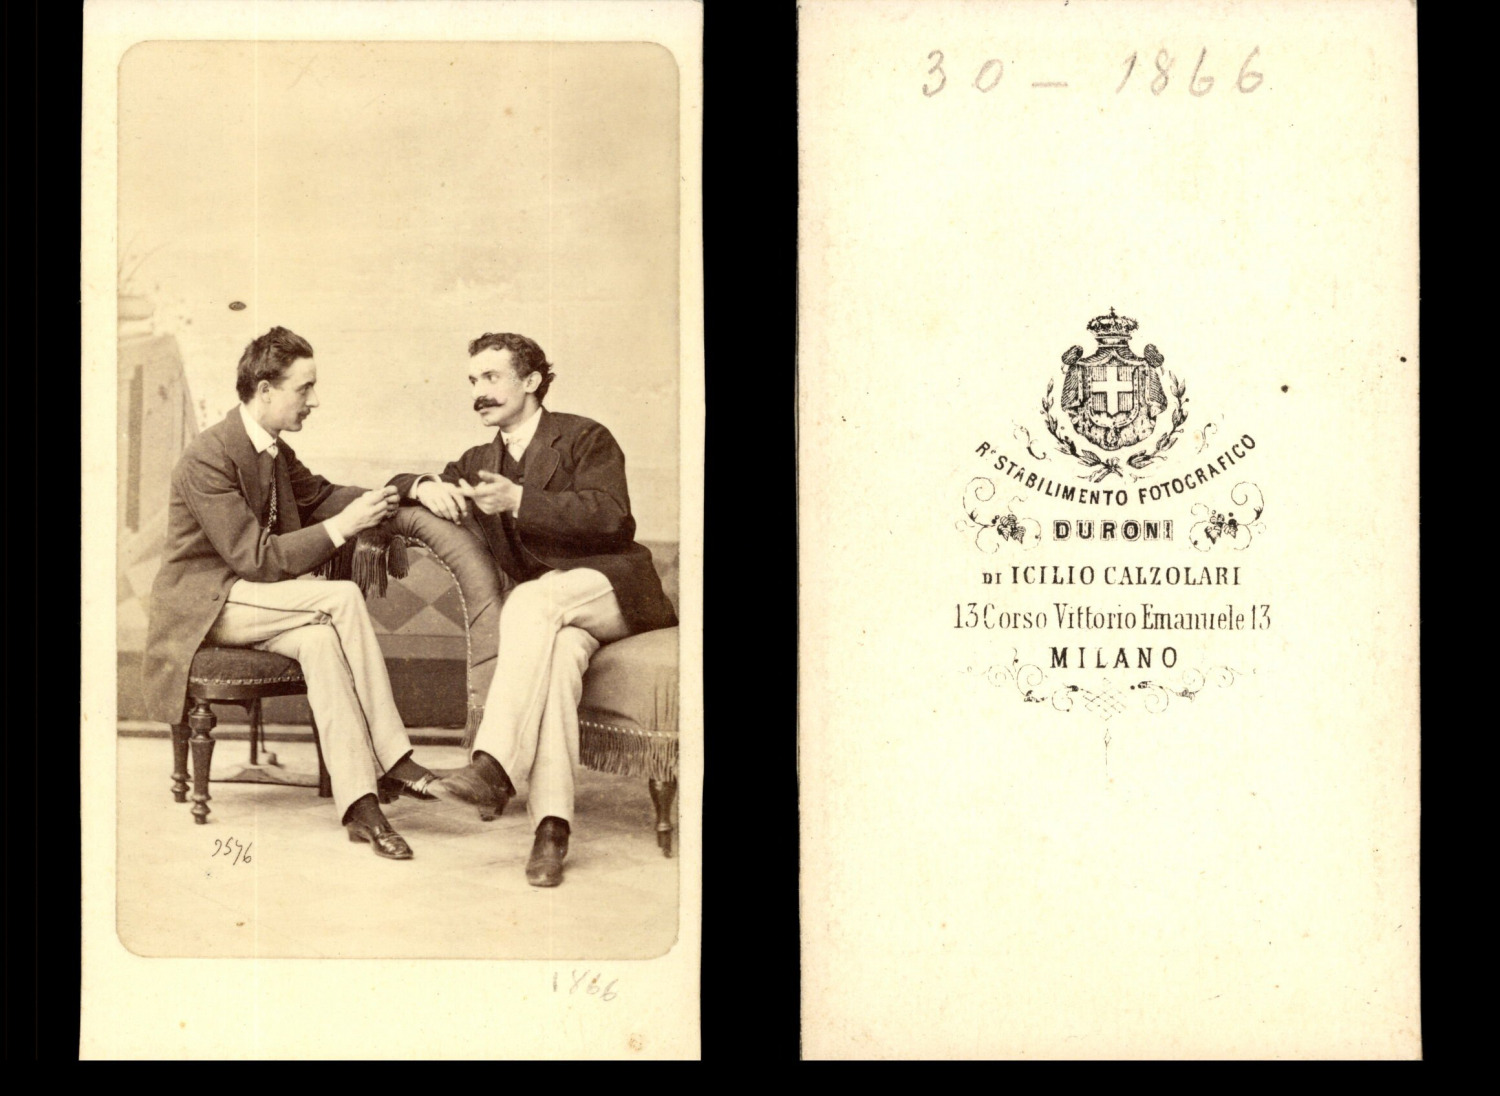 Duroni, Milano, Gentlemen in Conversation Vintage Albumen Print CDV.